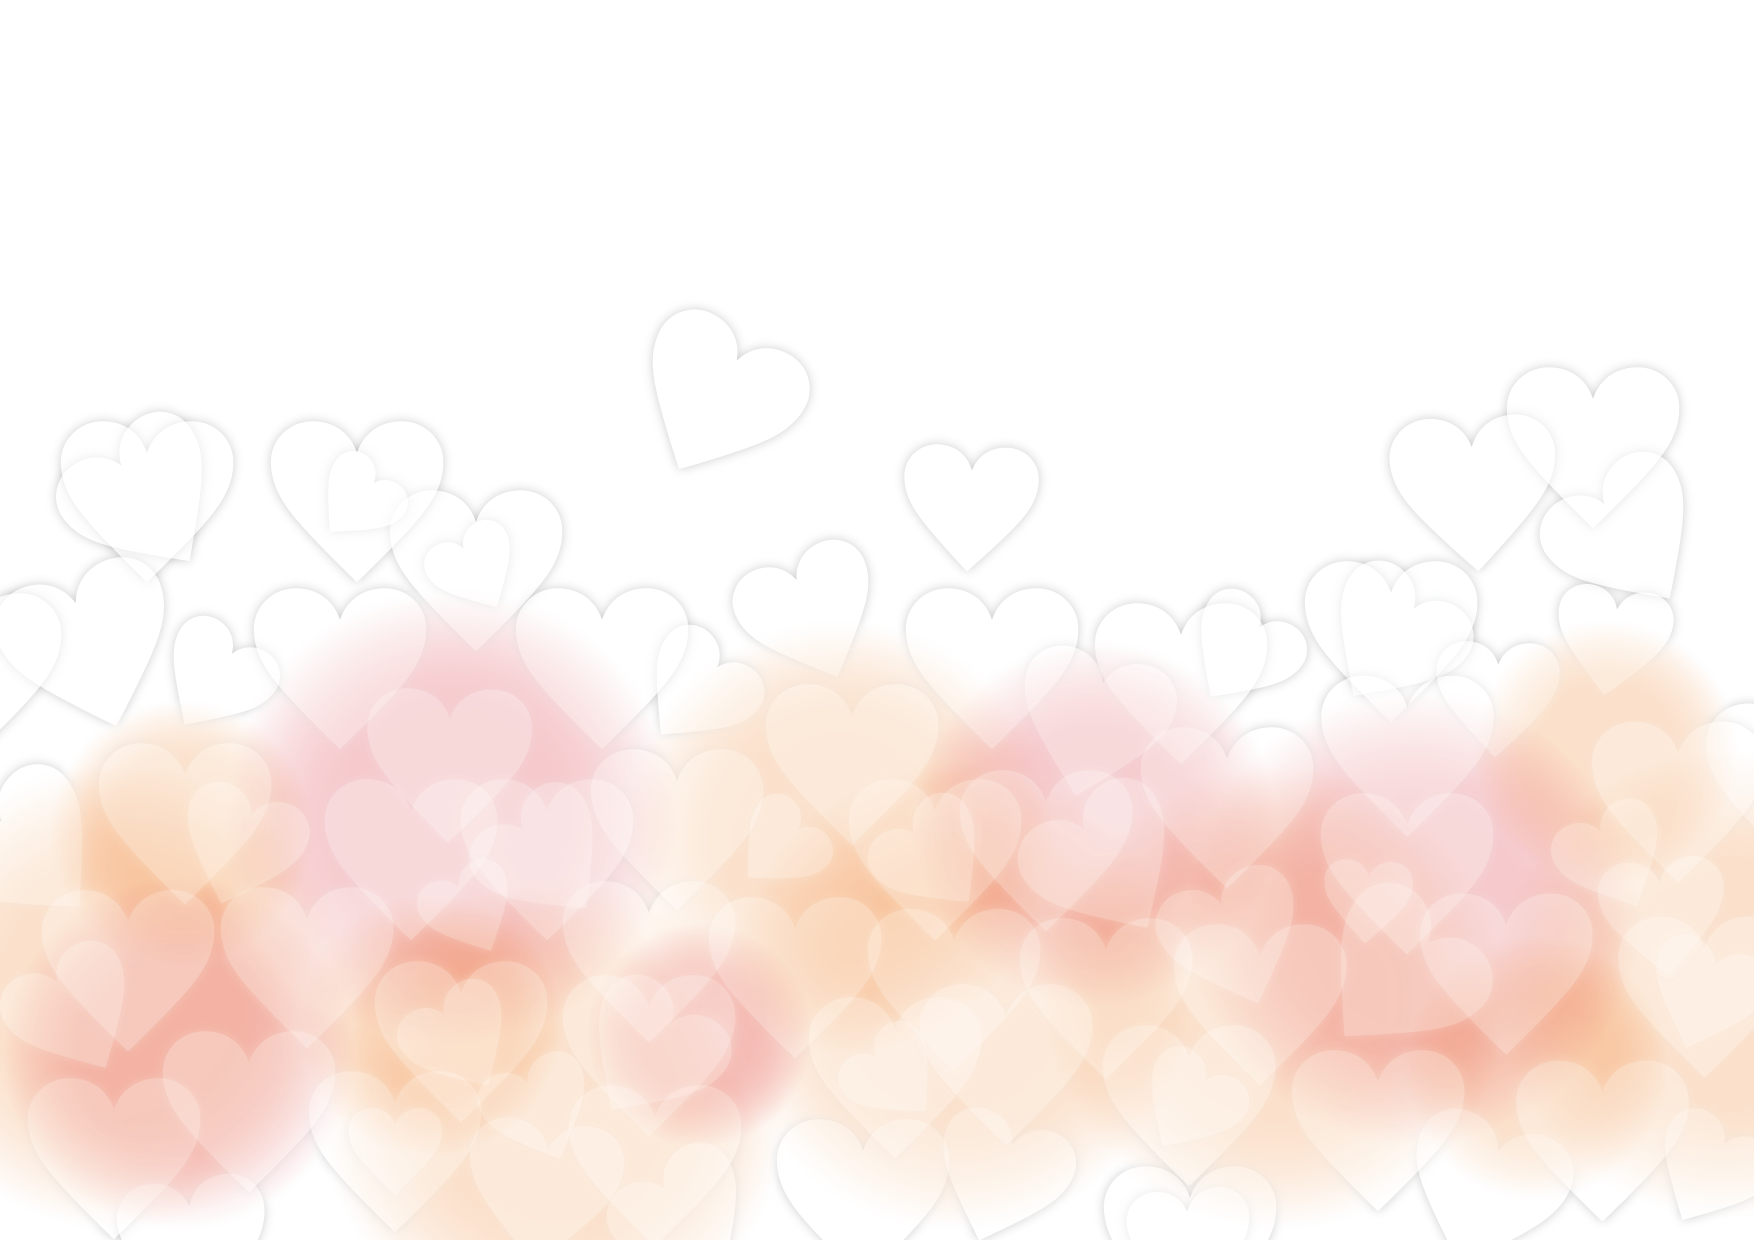 可愛いイラスト無料 バレンタイン 背景 やわらか ピンク ハート Free Illustration Valentine Background Soft Pink Heart 公式 イラストダウンロード